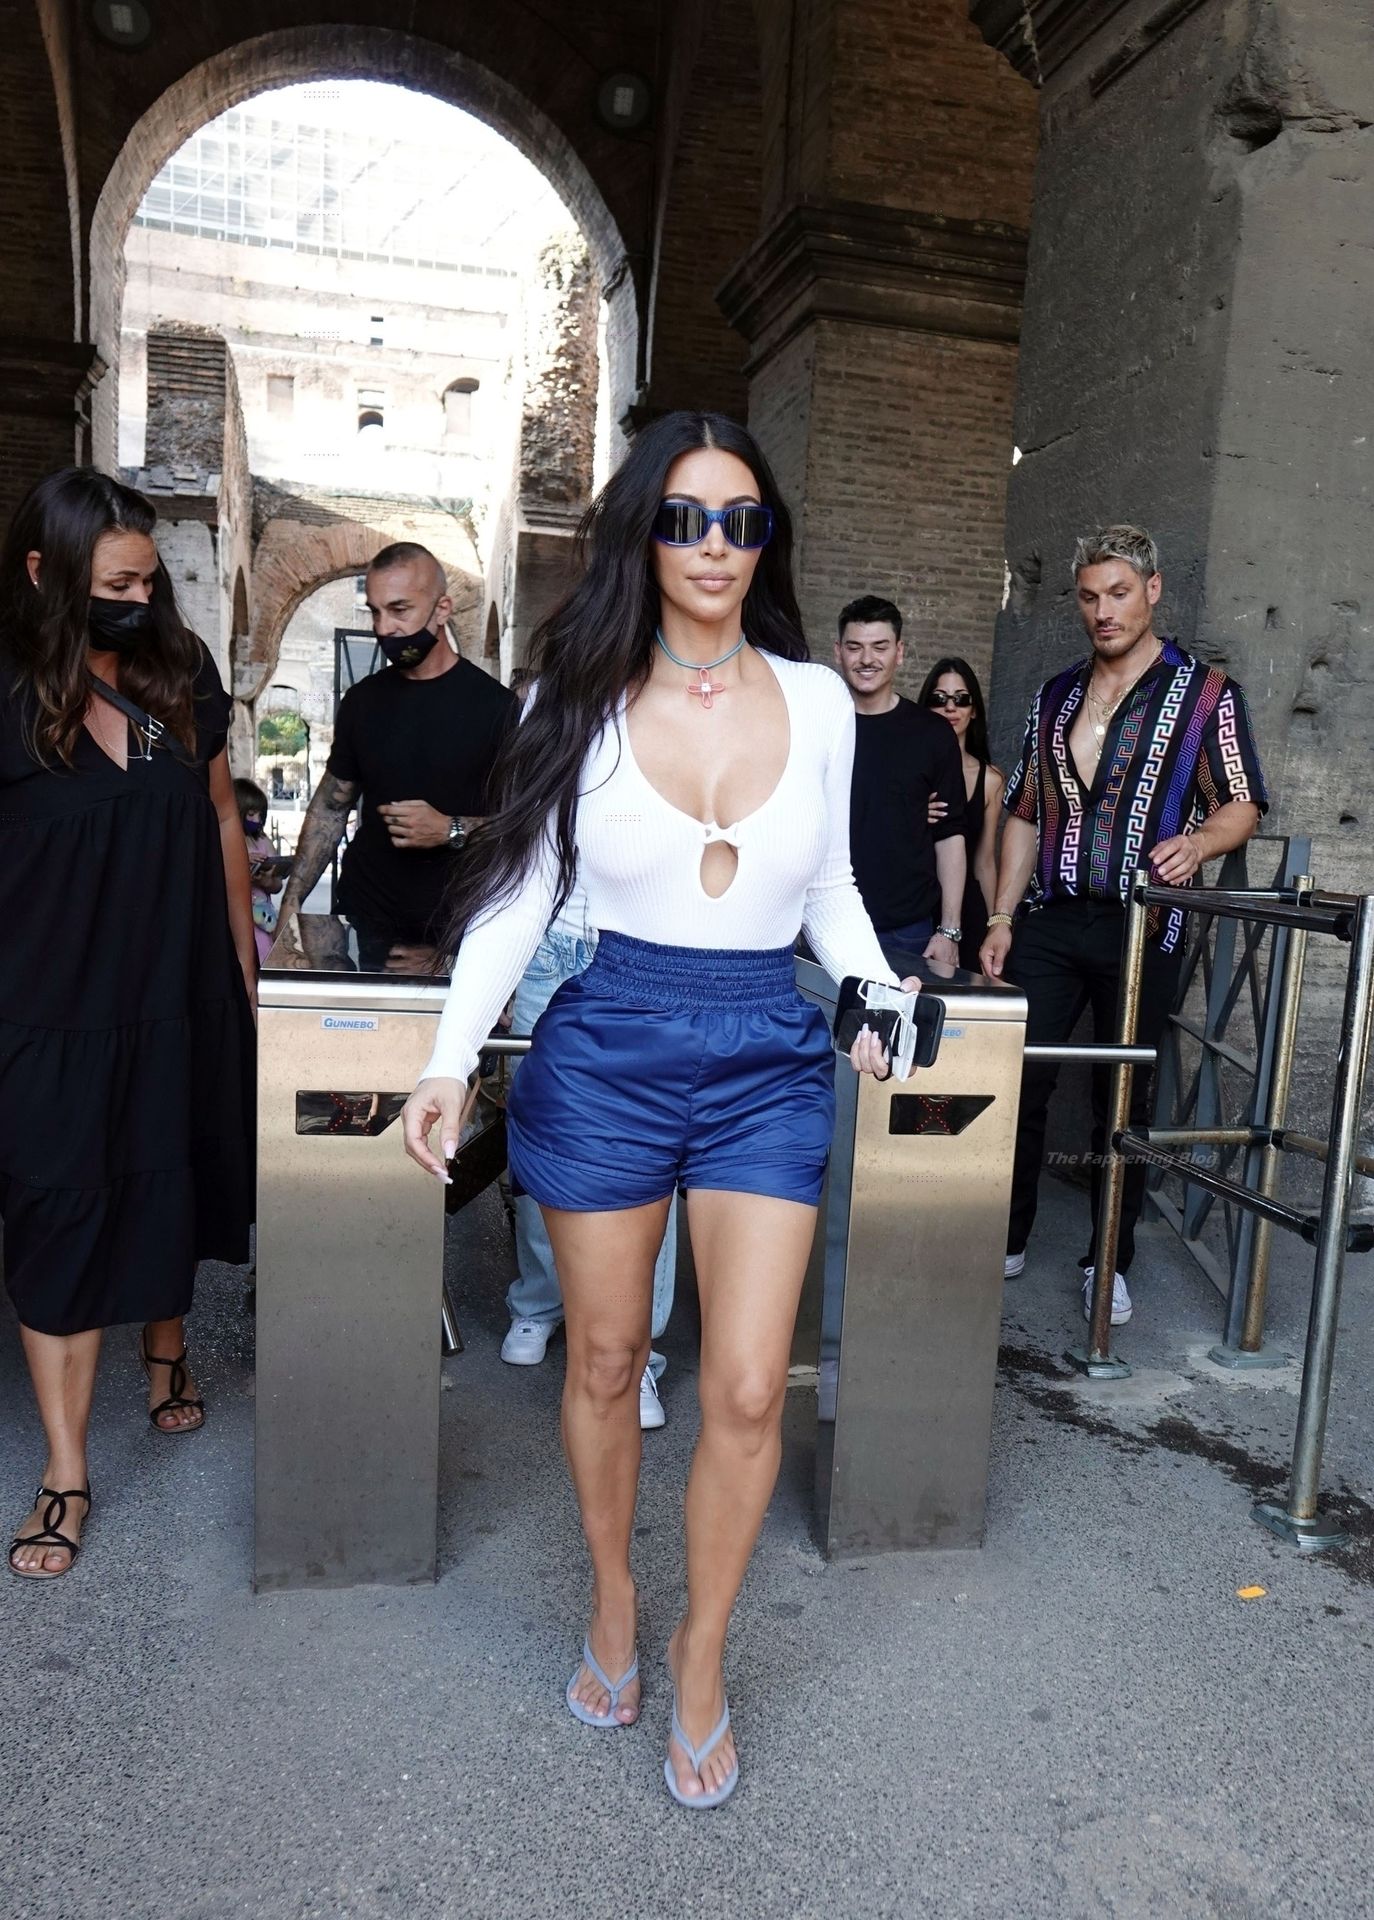 Kim-Kardashian-Sexy-The-Fappening-Blog-17.jpg